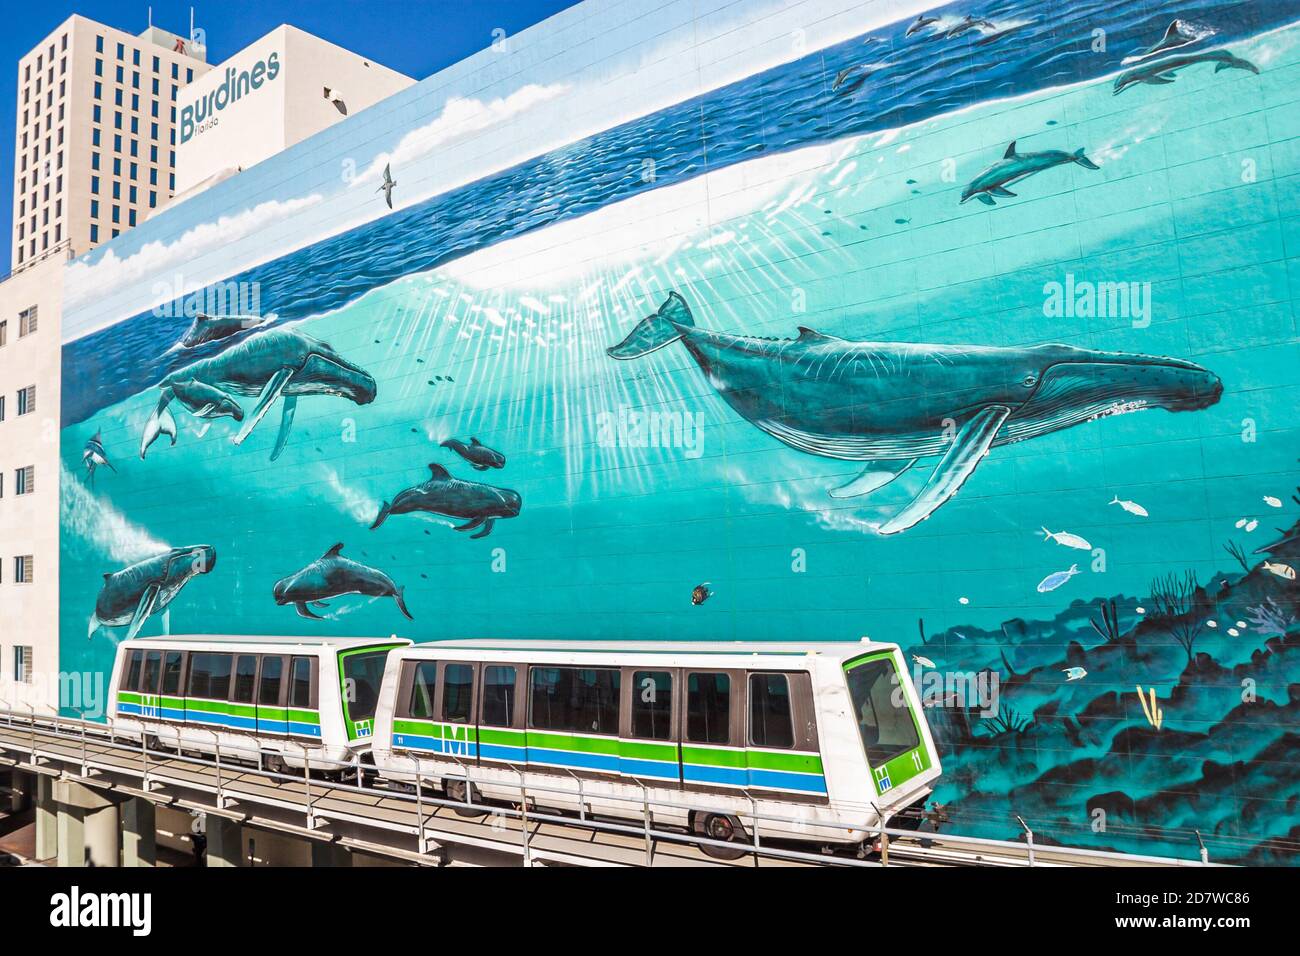 Miami Florida, People MetroMover service de train gratuit au centre-ville, Marine Life baleines thème mur bâtiment latéral, Banque D'Images